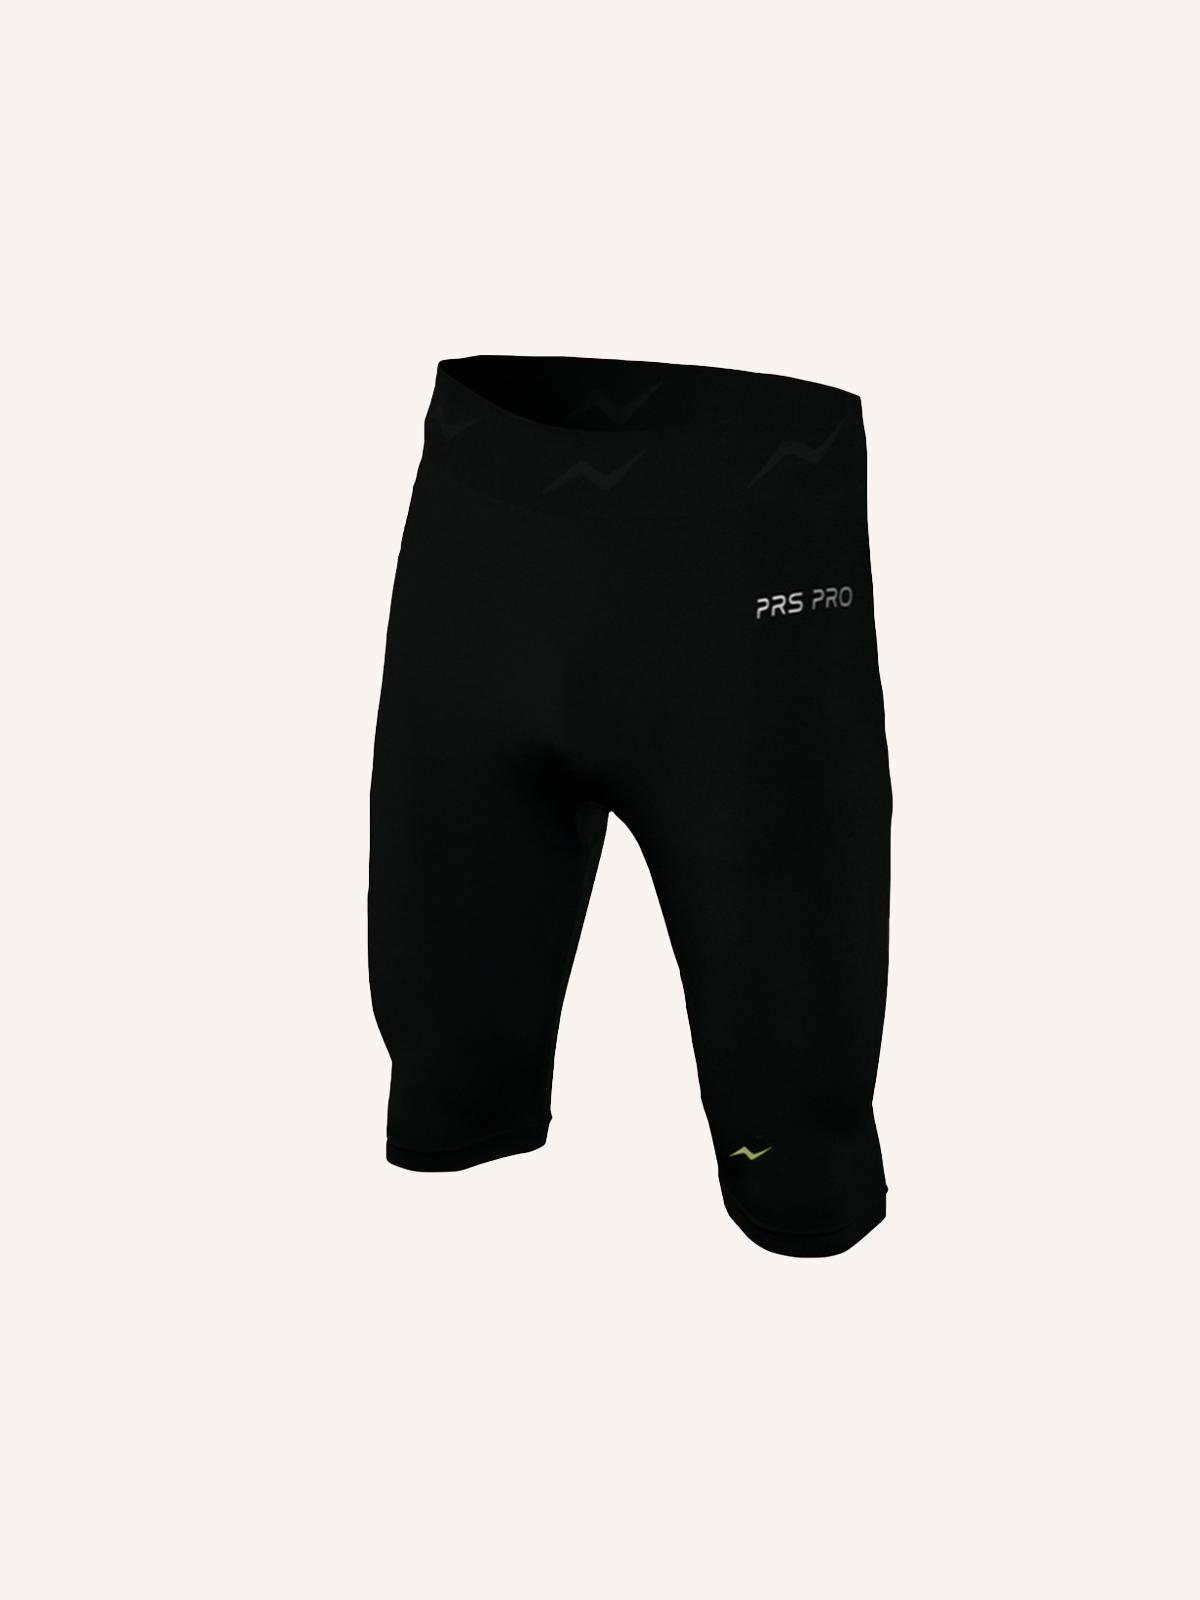 Technical Shorts for Men | Plain Color | Single Pack | PRS PRO 08